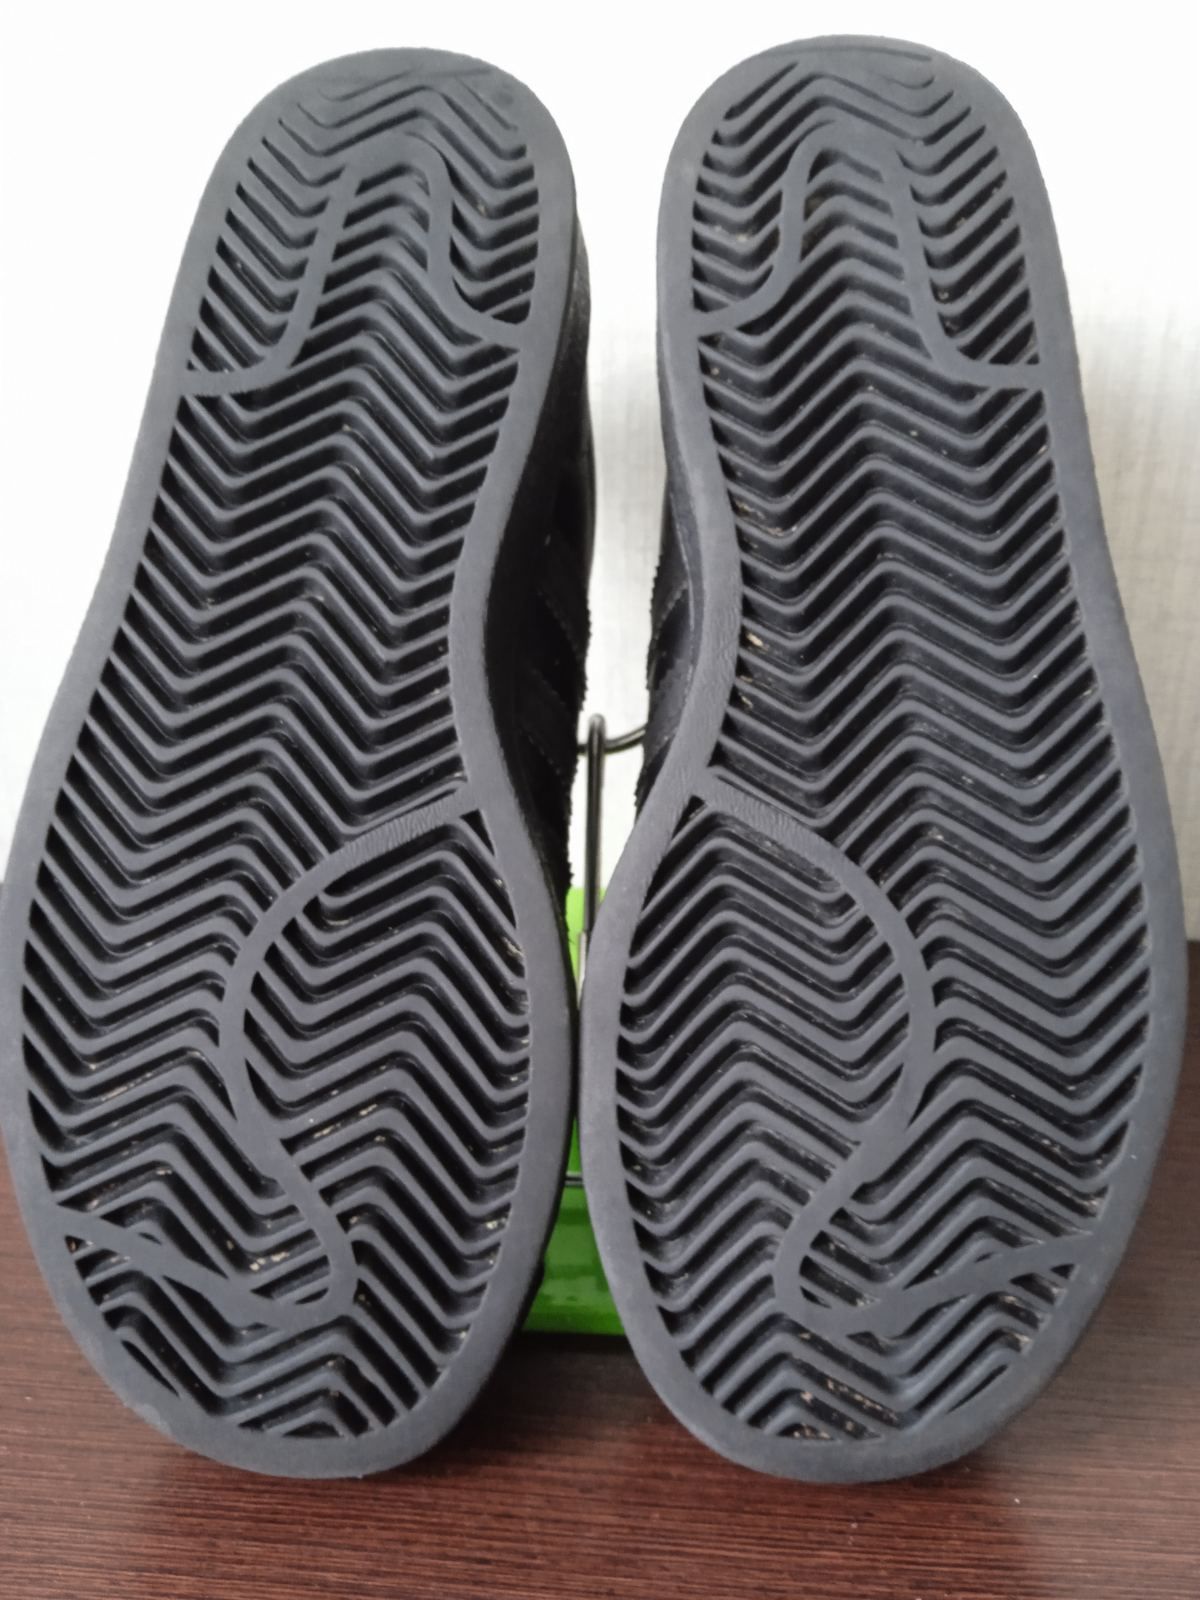 Оригінал Adidas SUPER STAR Шкіряні кросівки для хлопчика 33розмір,21.5